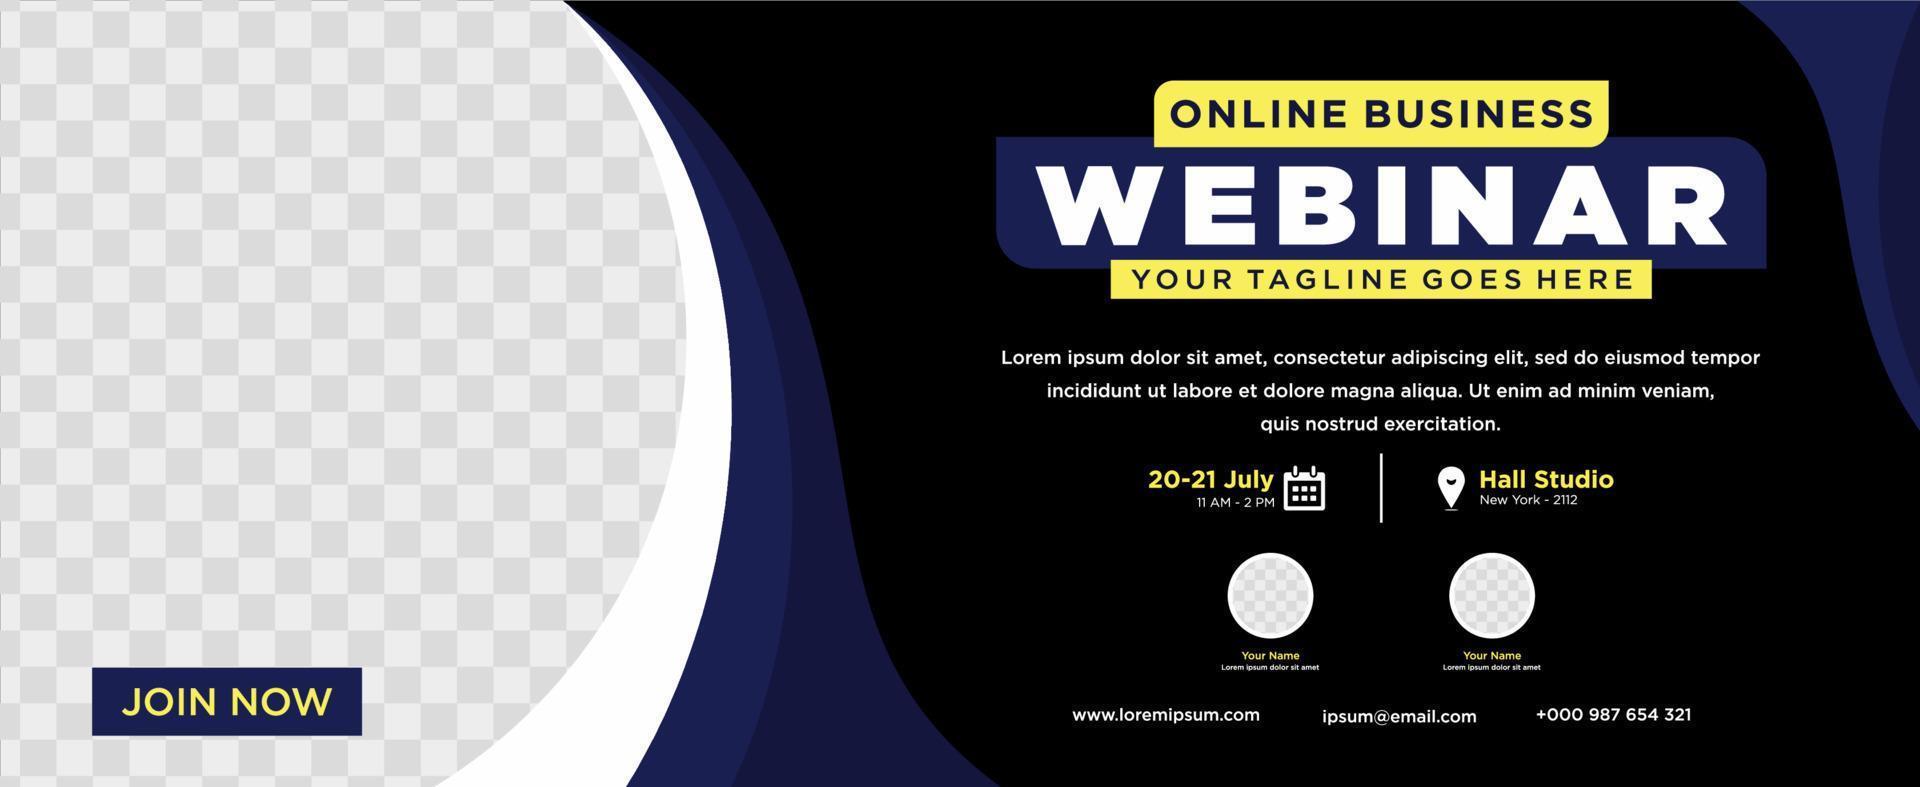 seminario web en vivo de marketing digital y publicación en redes sociales corporativas o banner de plantilla vector